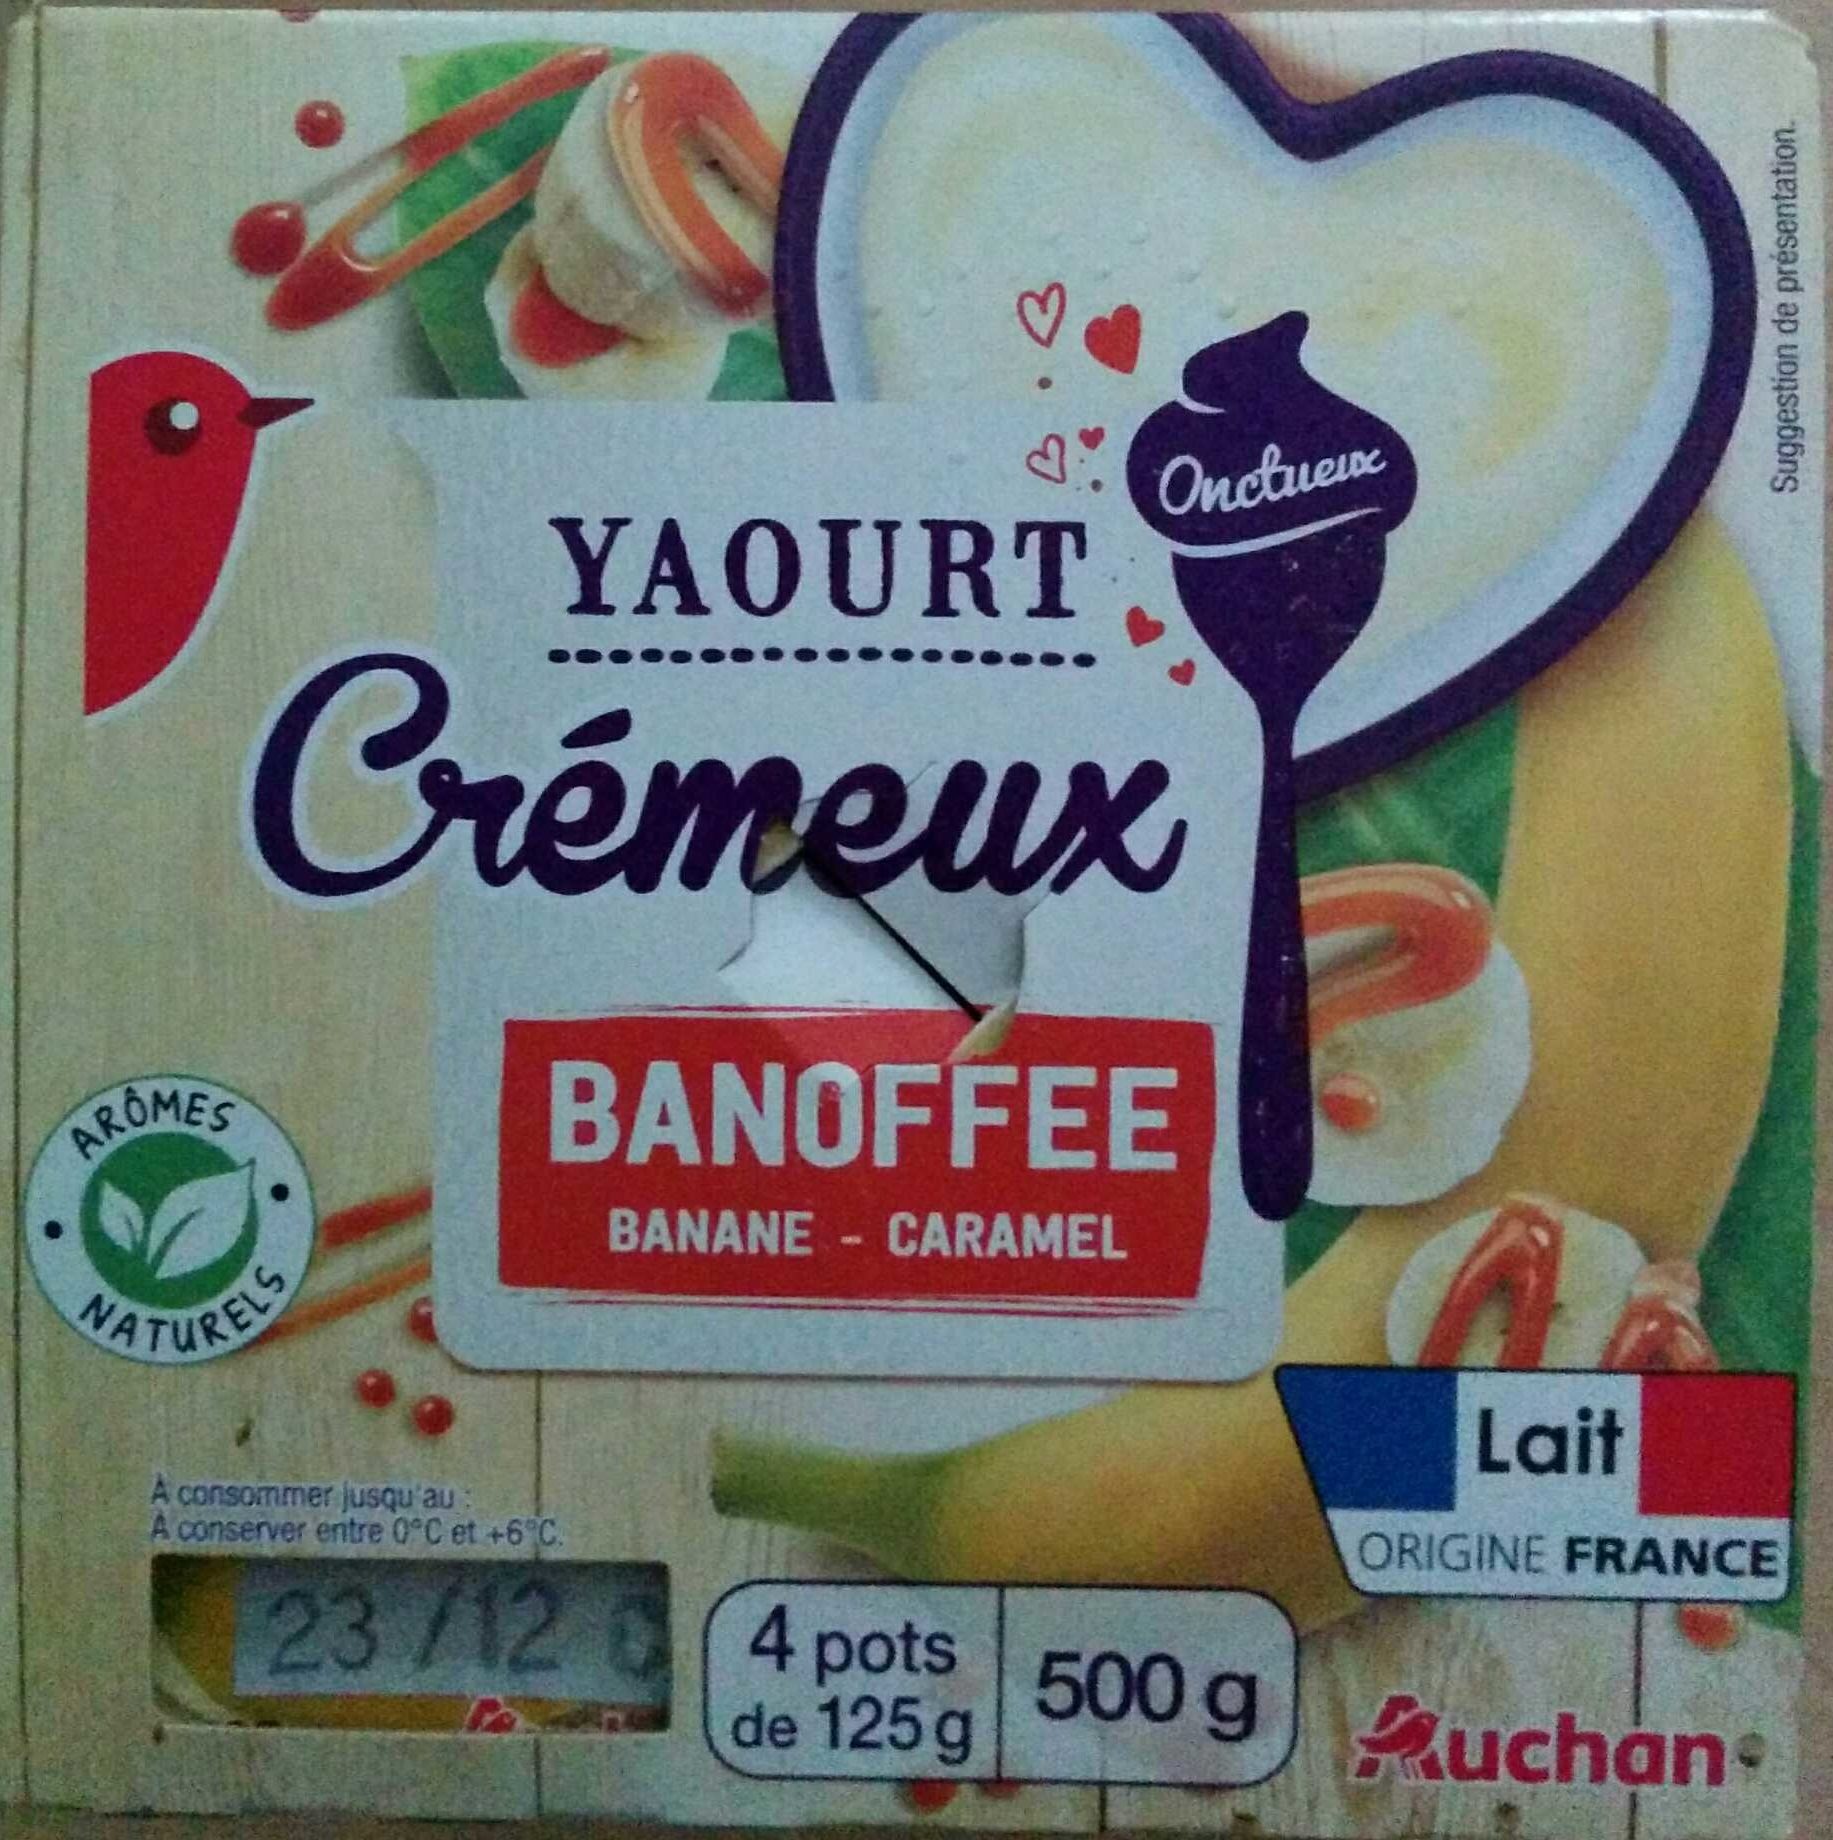 Yaourt crémeux banoffee banane caramel - Product - fr